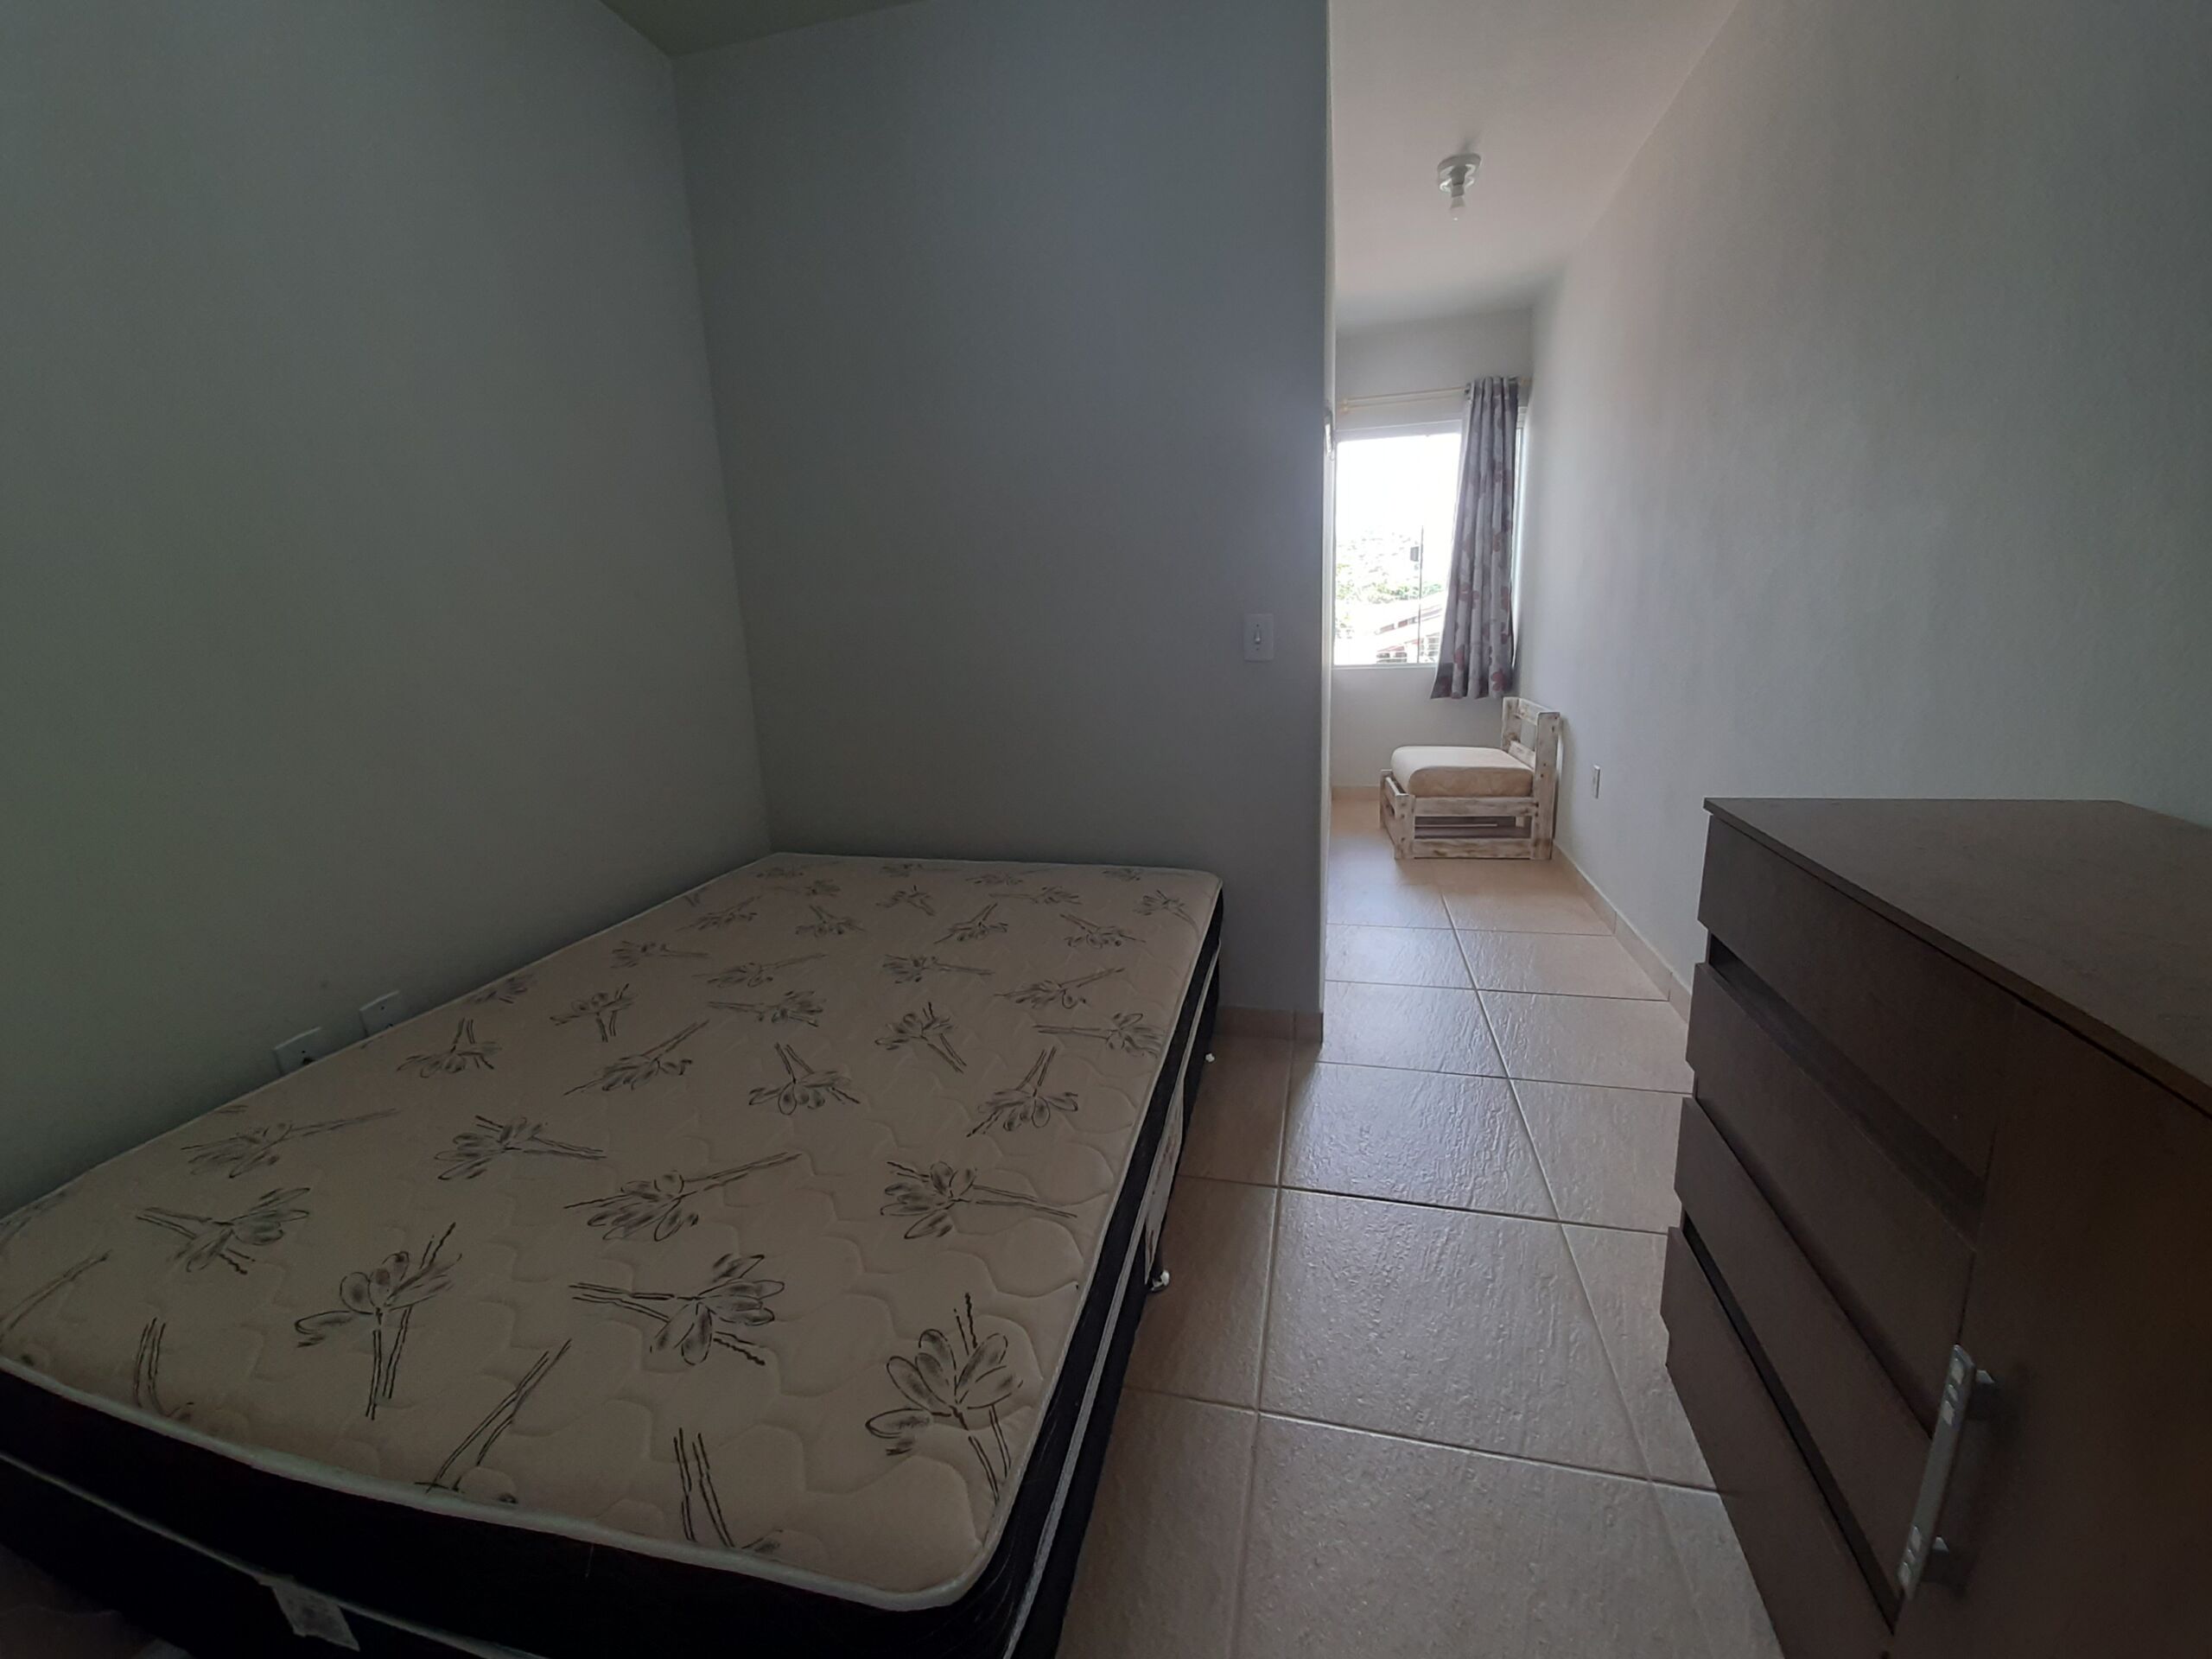 Sobrado geminado – mobiliado – 3 dormitórios – a 4 quadras da praia – Balneário Piçarras